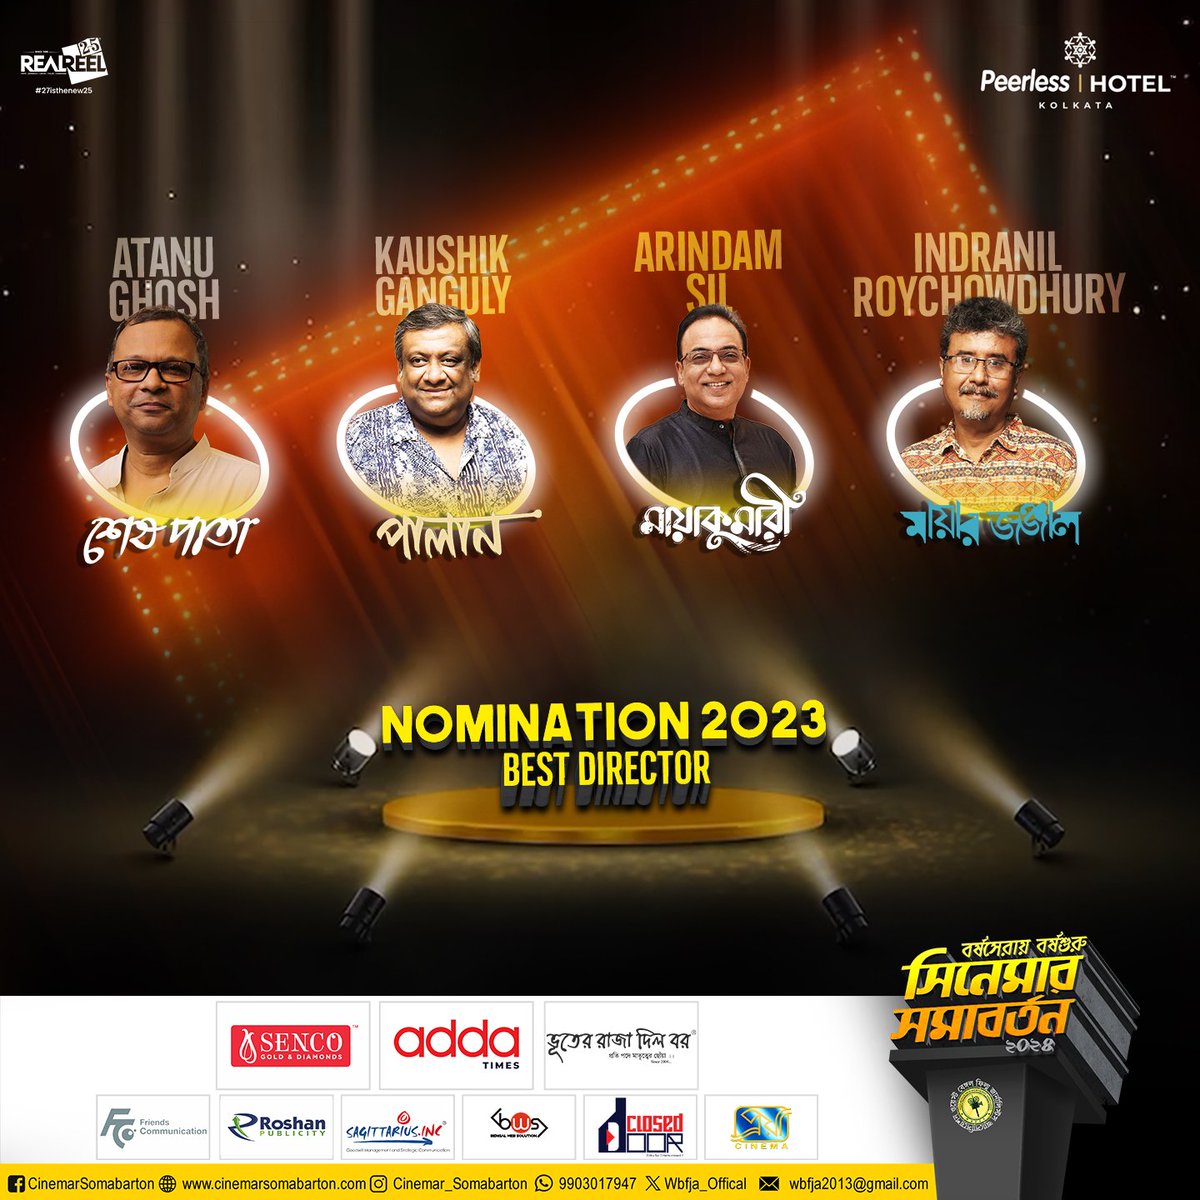 Nomination 2023
Best Director
.
.
.
#AtanuGhosh #KaushikGanguly #ArindamSil #IndranilRoychowdhury
#filmawards #WBFJA #bengalifilmawards #awardsceremony #cinemarsomabarton #cinemarsomabarton2024 #nomination #nomitation2023 #bengalifilms